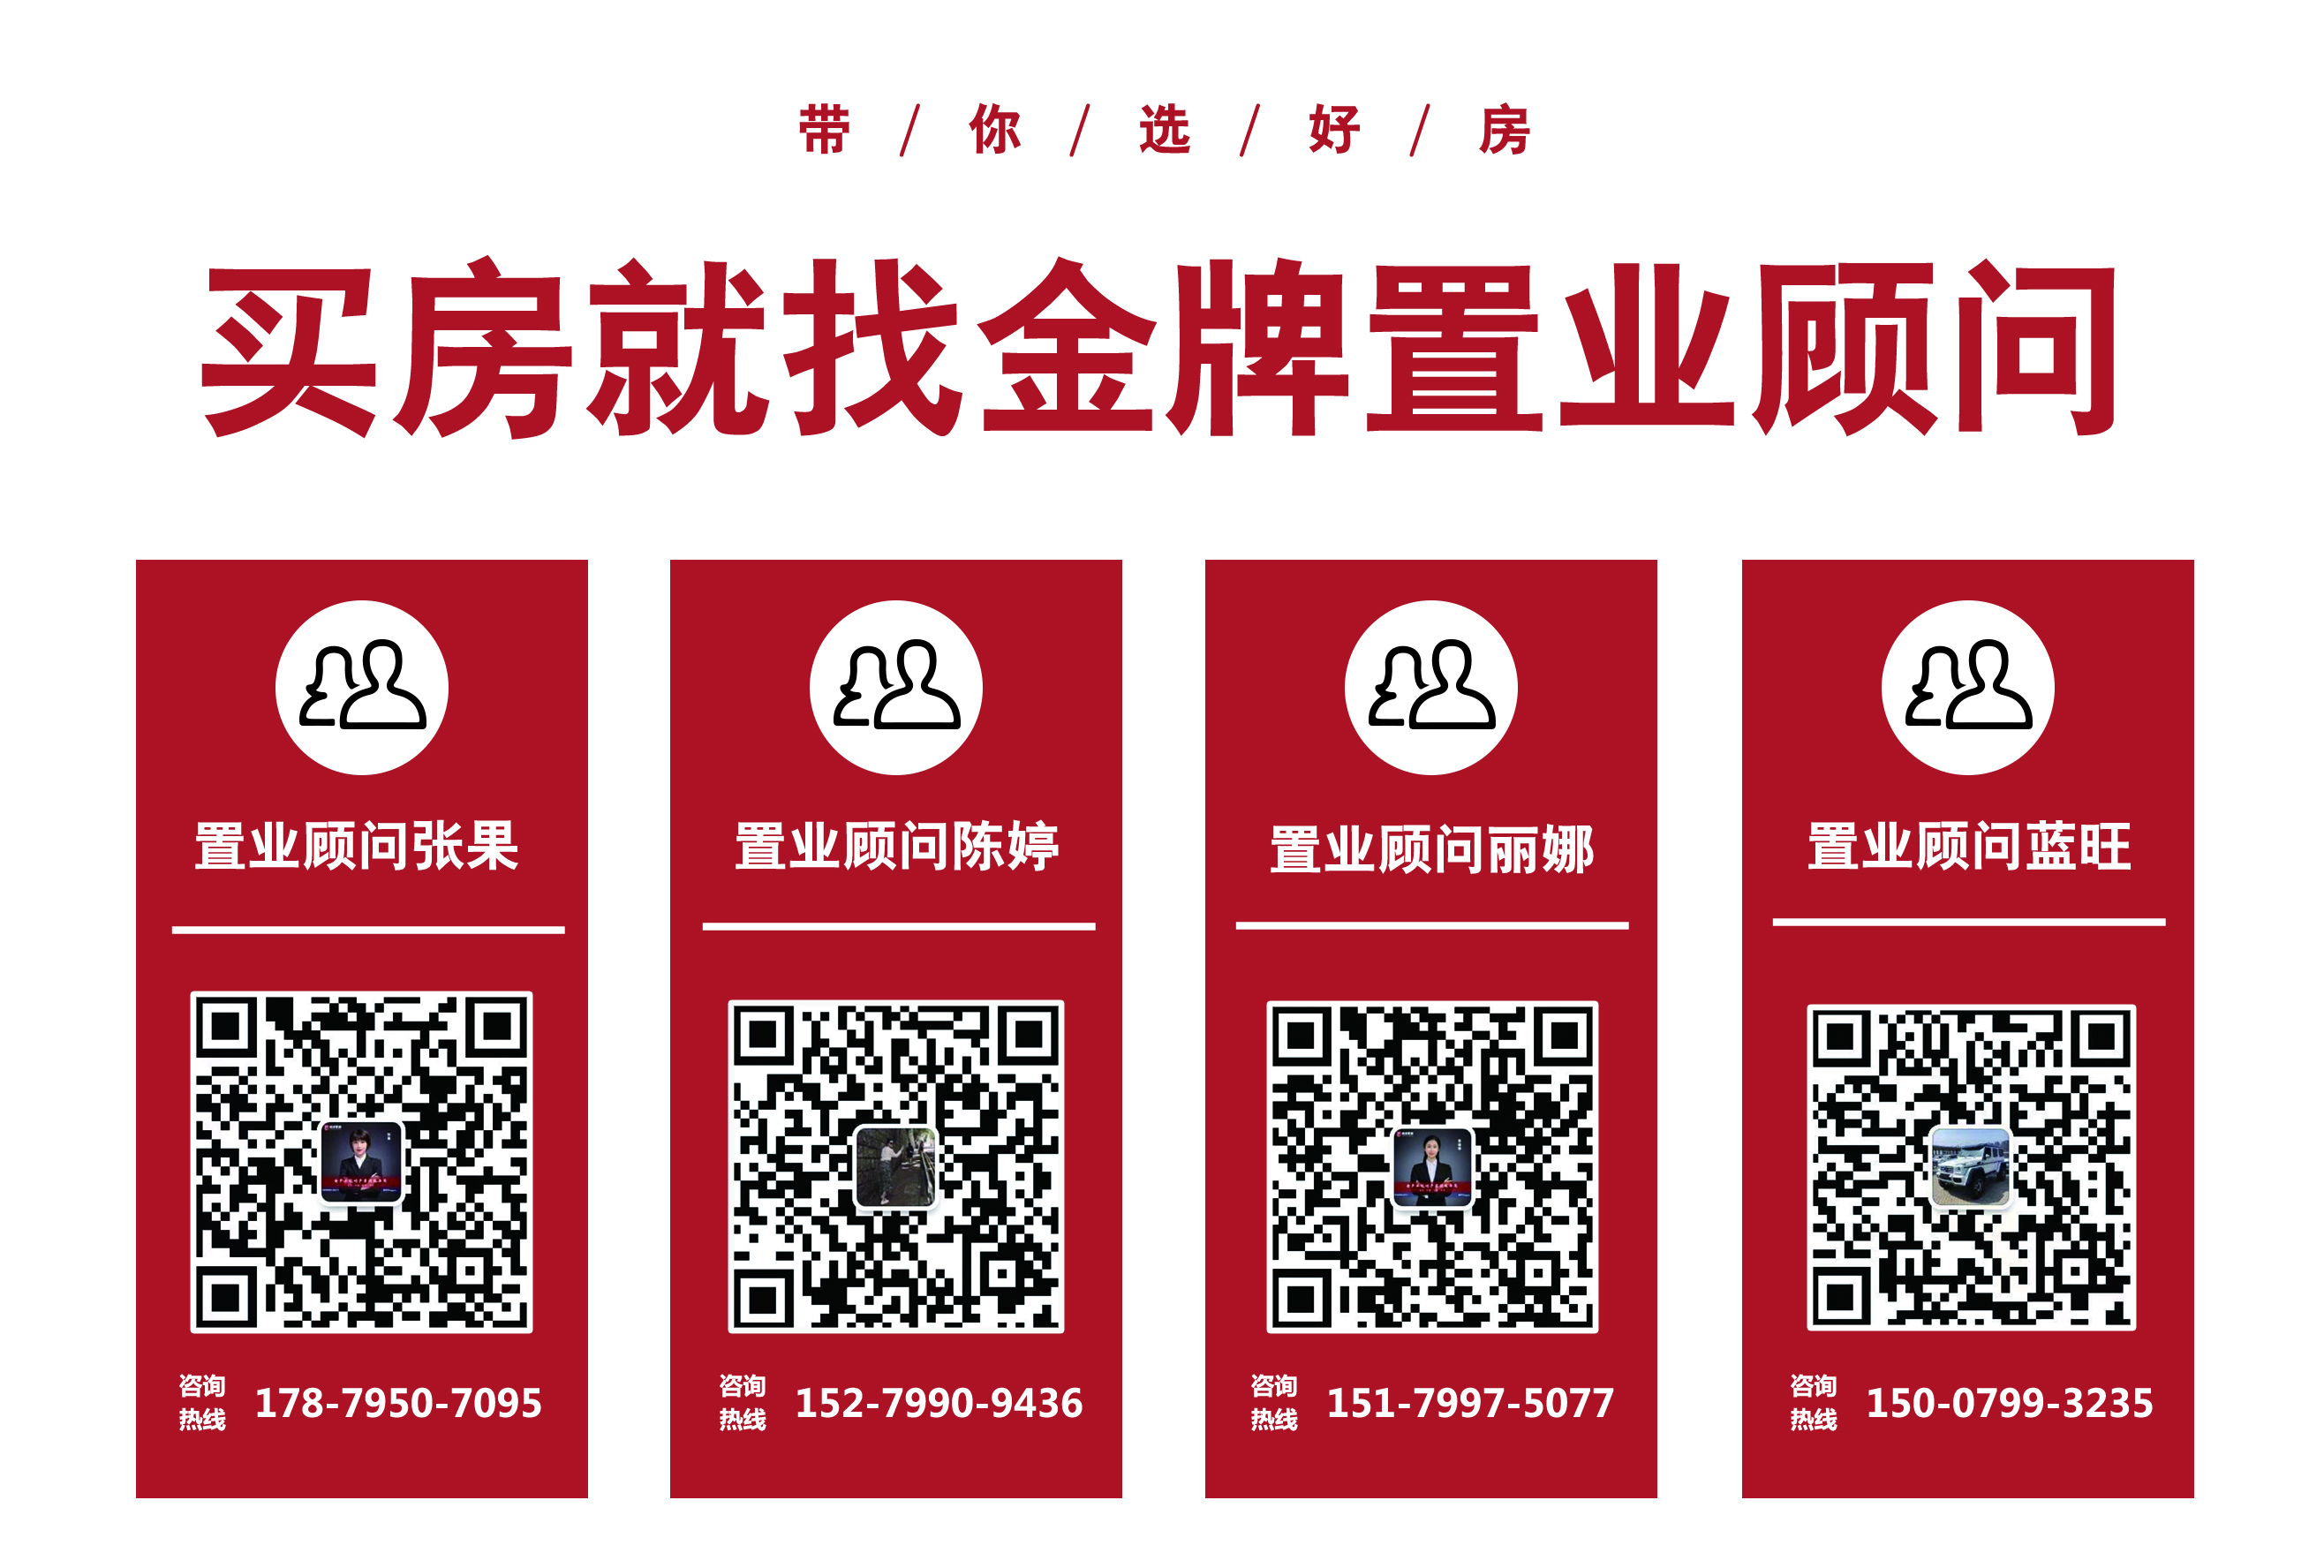 萍乡城区商品房预售证2020年第7批一览表